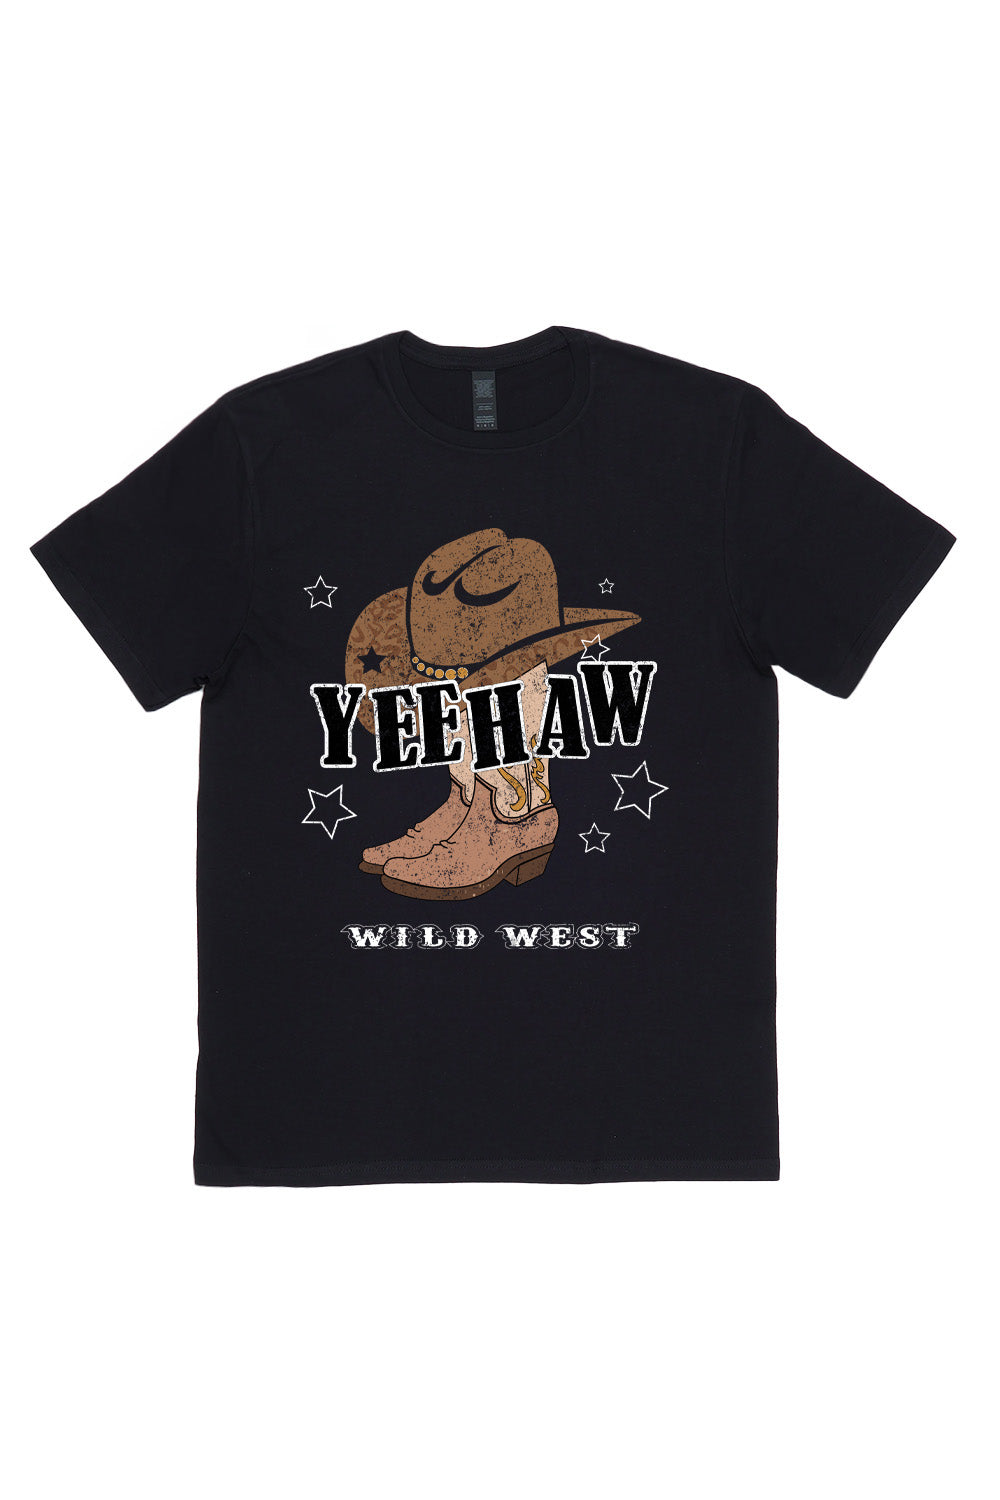 Yeehaw Wild West T-Shirt in Black(Custom Packs)